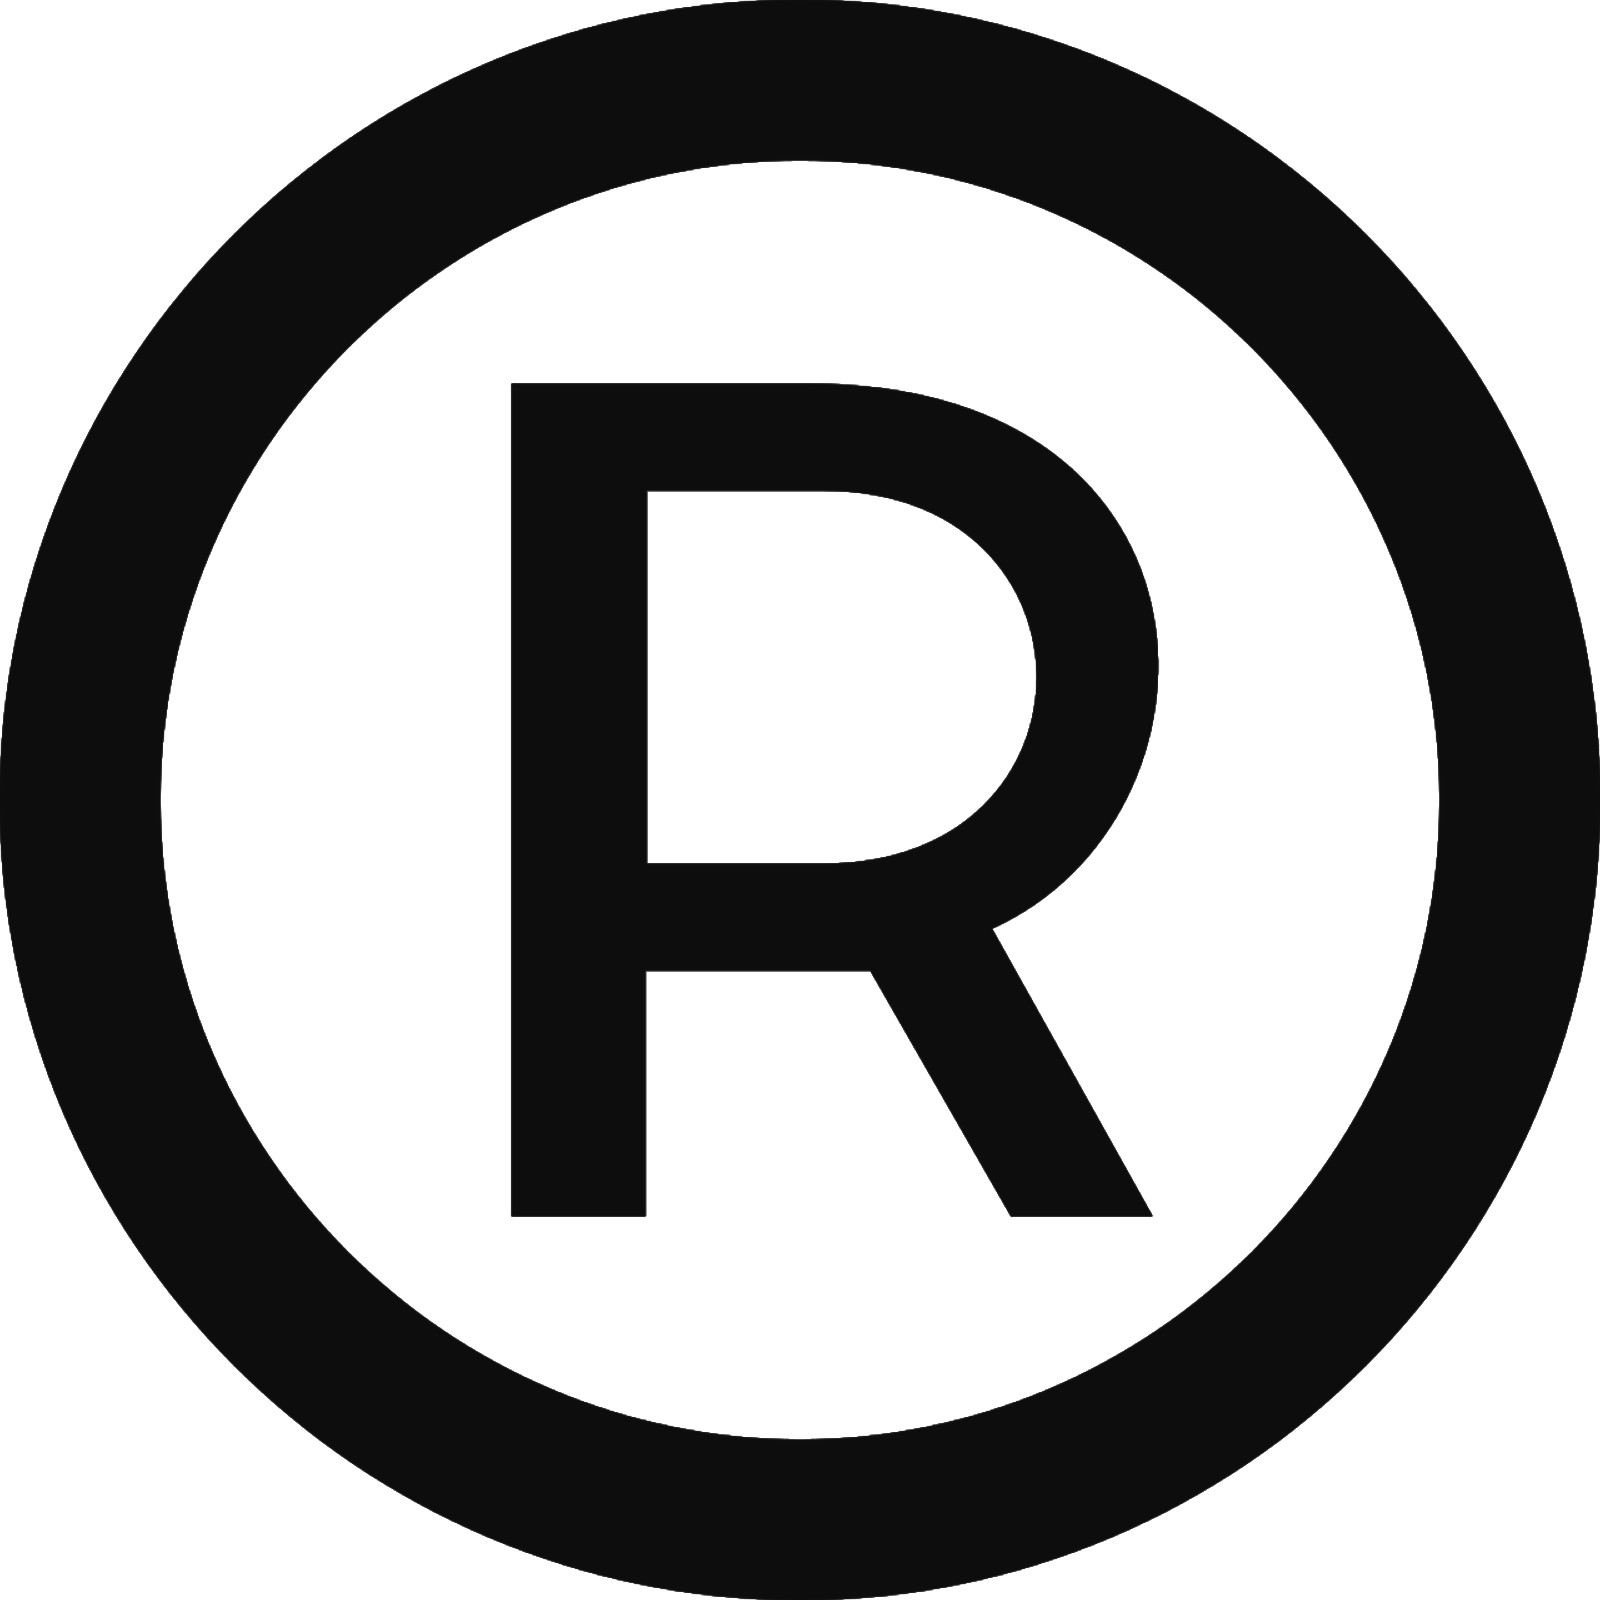 Emoji Registered Sign Decal Sticker Symbols. Imprintable